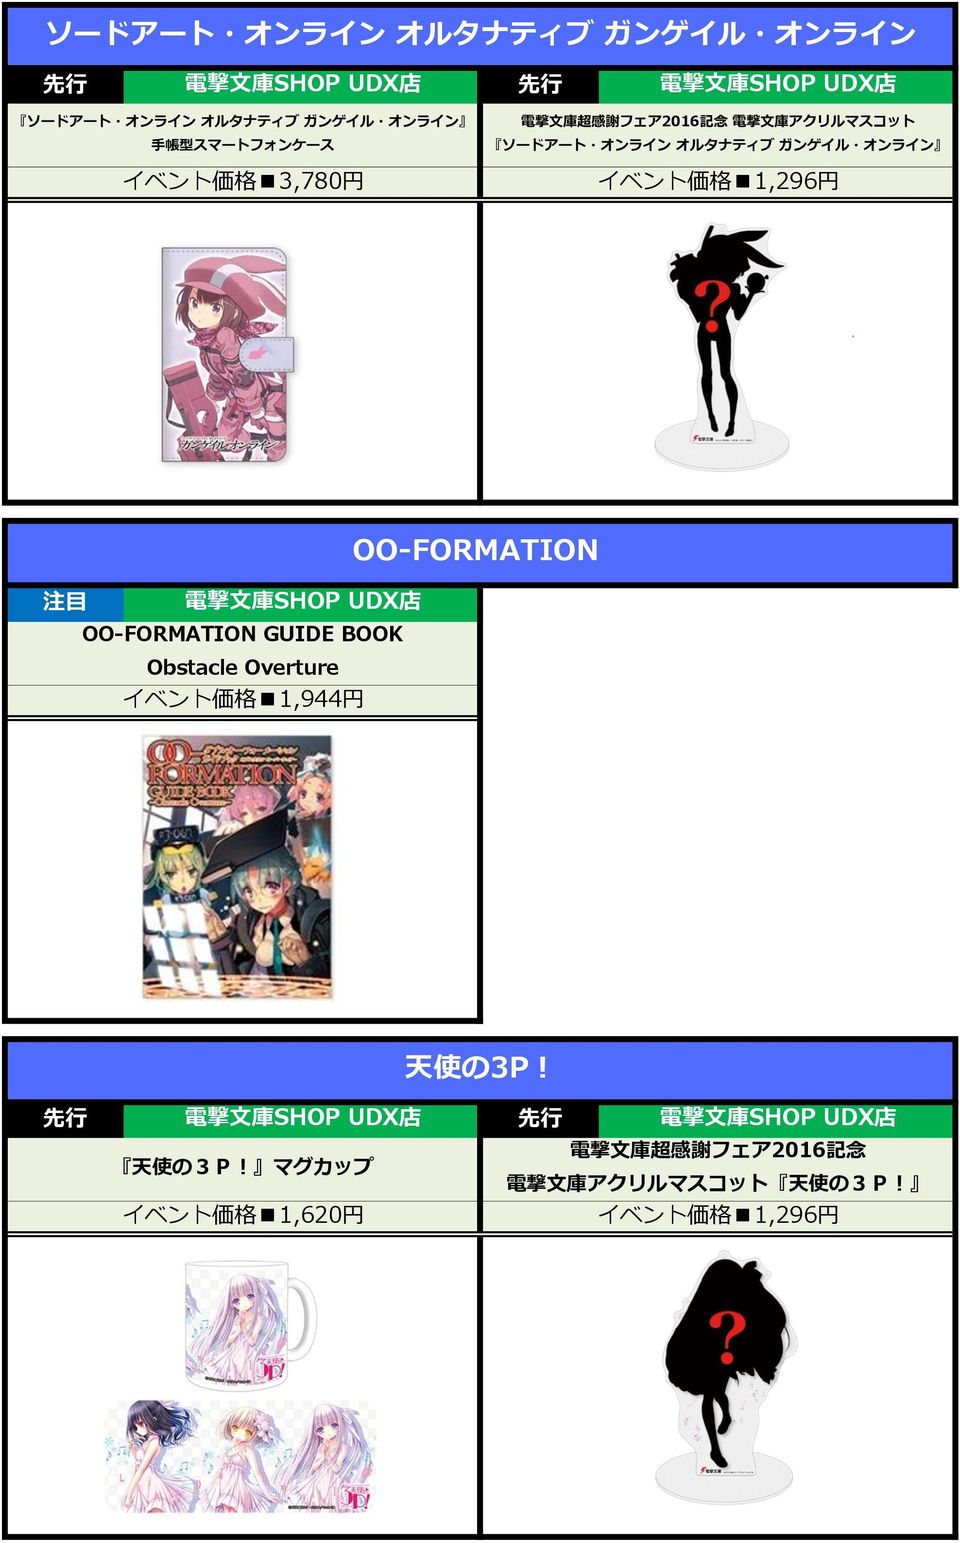 ガンゲイル オンライン 注 目 OO-FORMATION GUIDE BOOK Obstacle Overture イベント 価 格 1,944 円